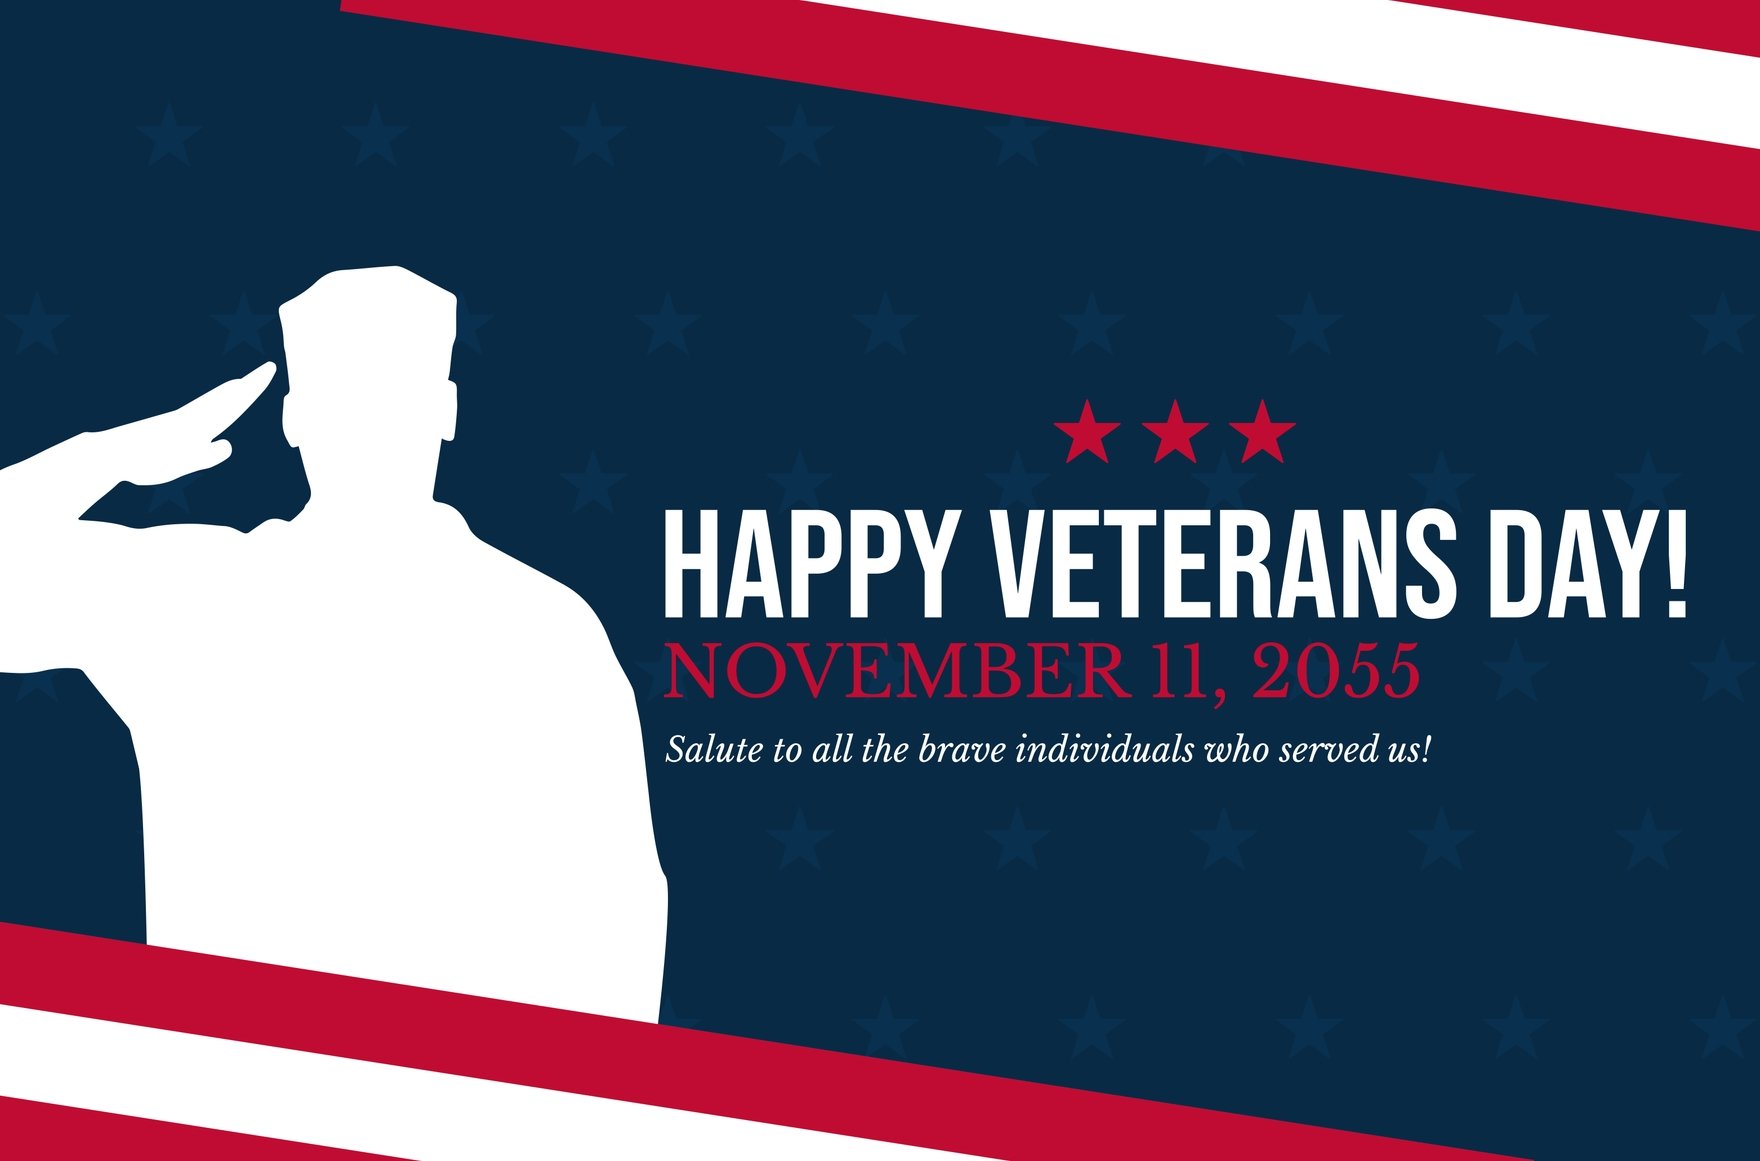 Veterans Day Banner in Illustrator, PSD, EPS, SVG, JPG, PNG